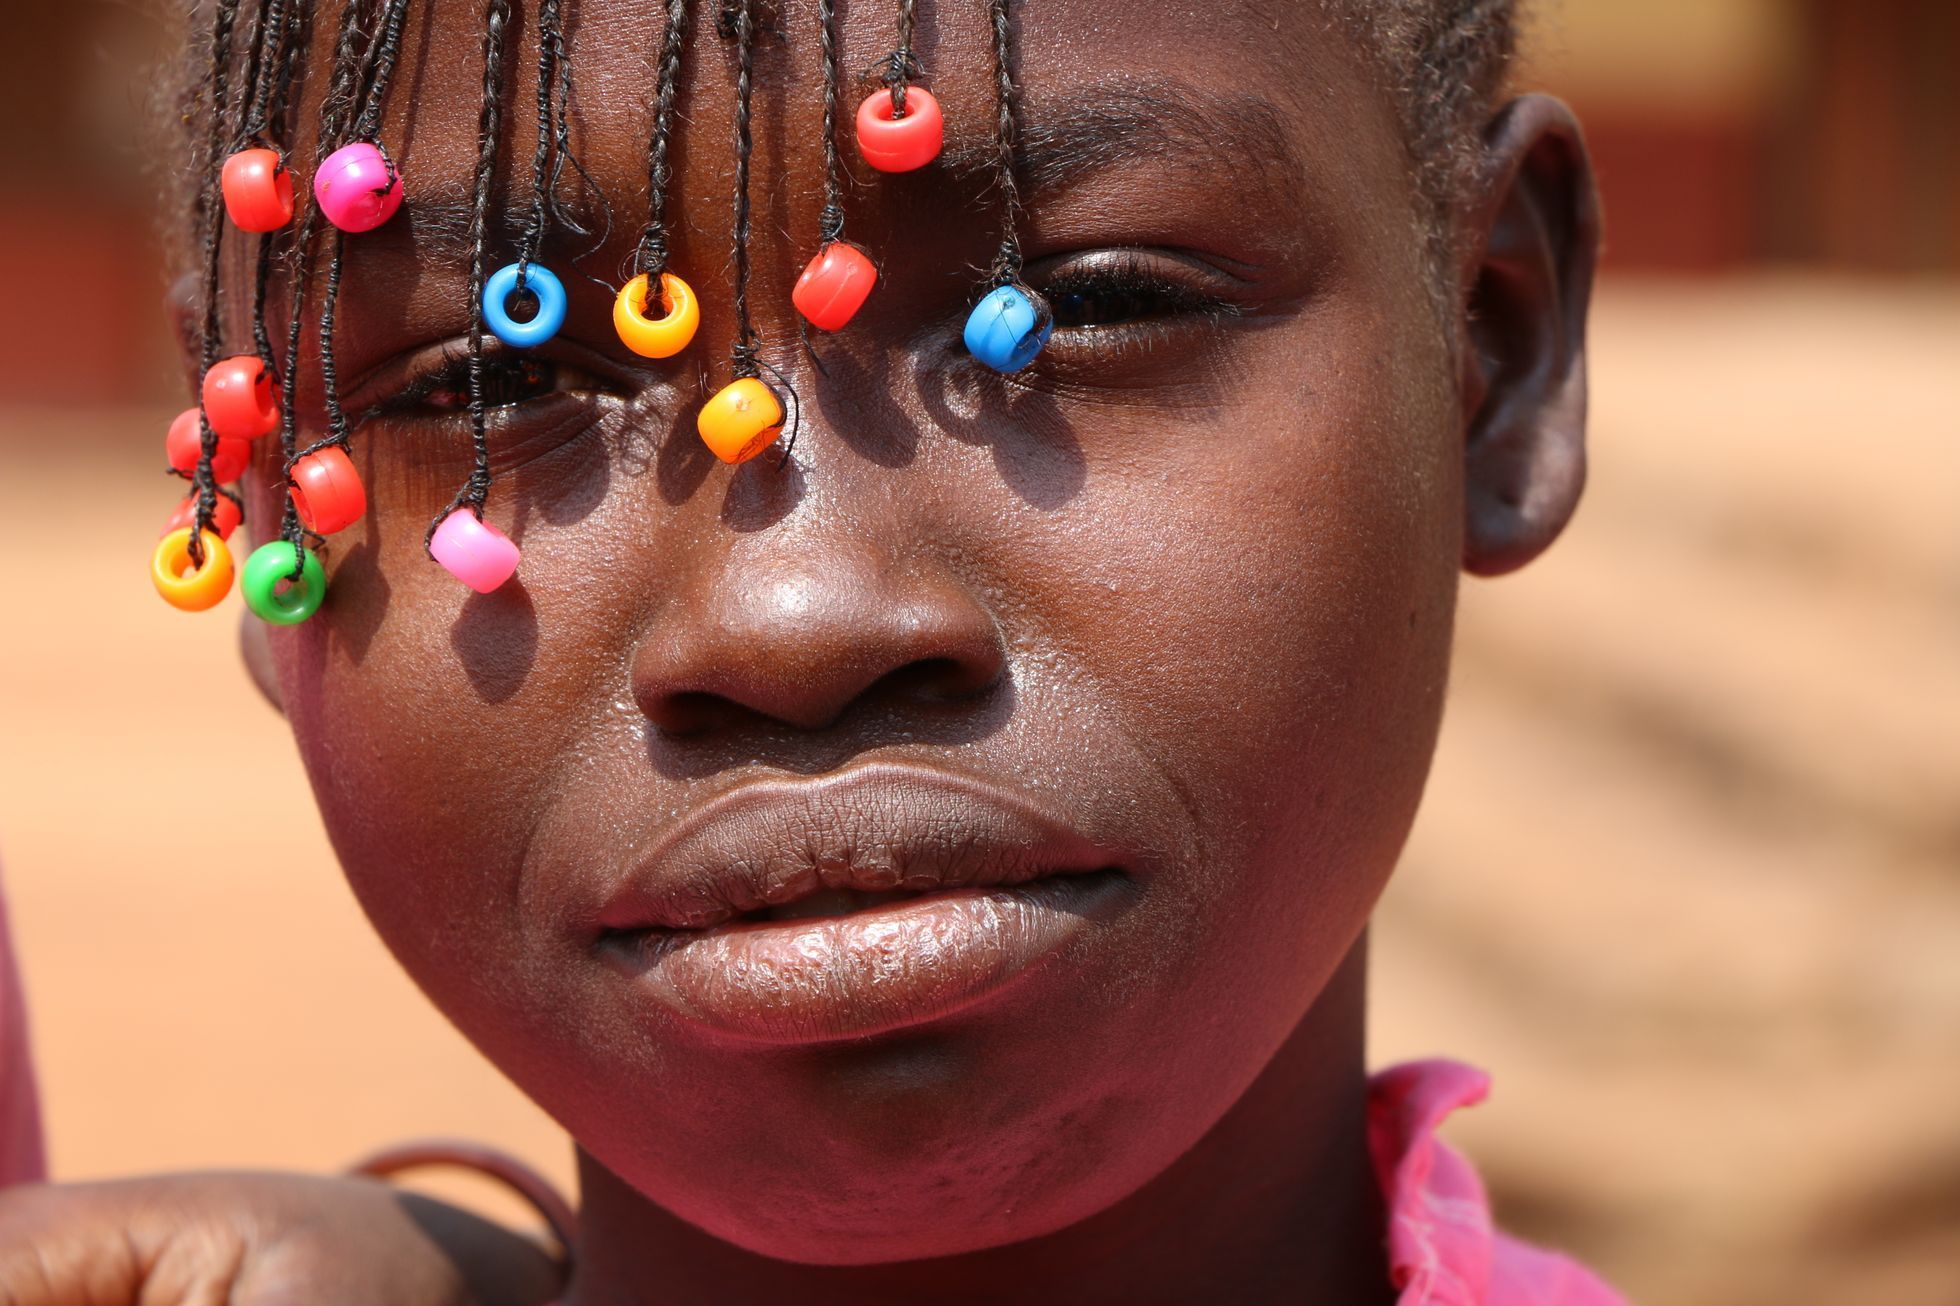 FOTO země Střední Afriky omezené 20